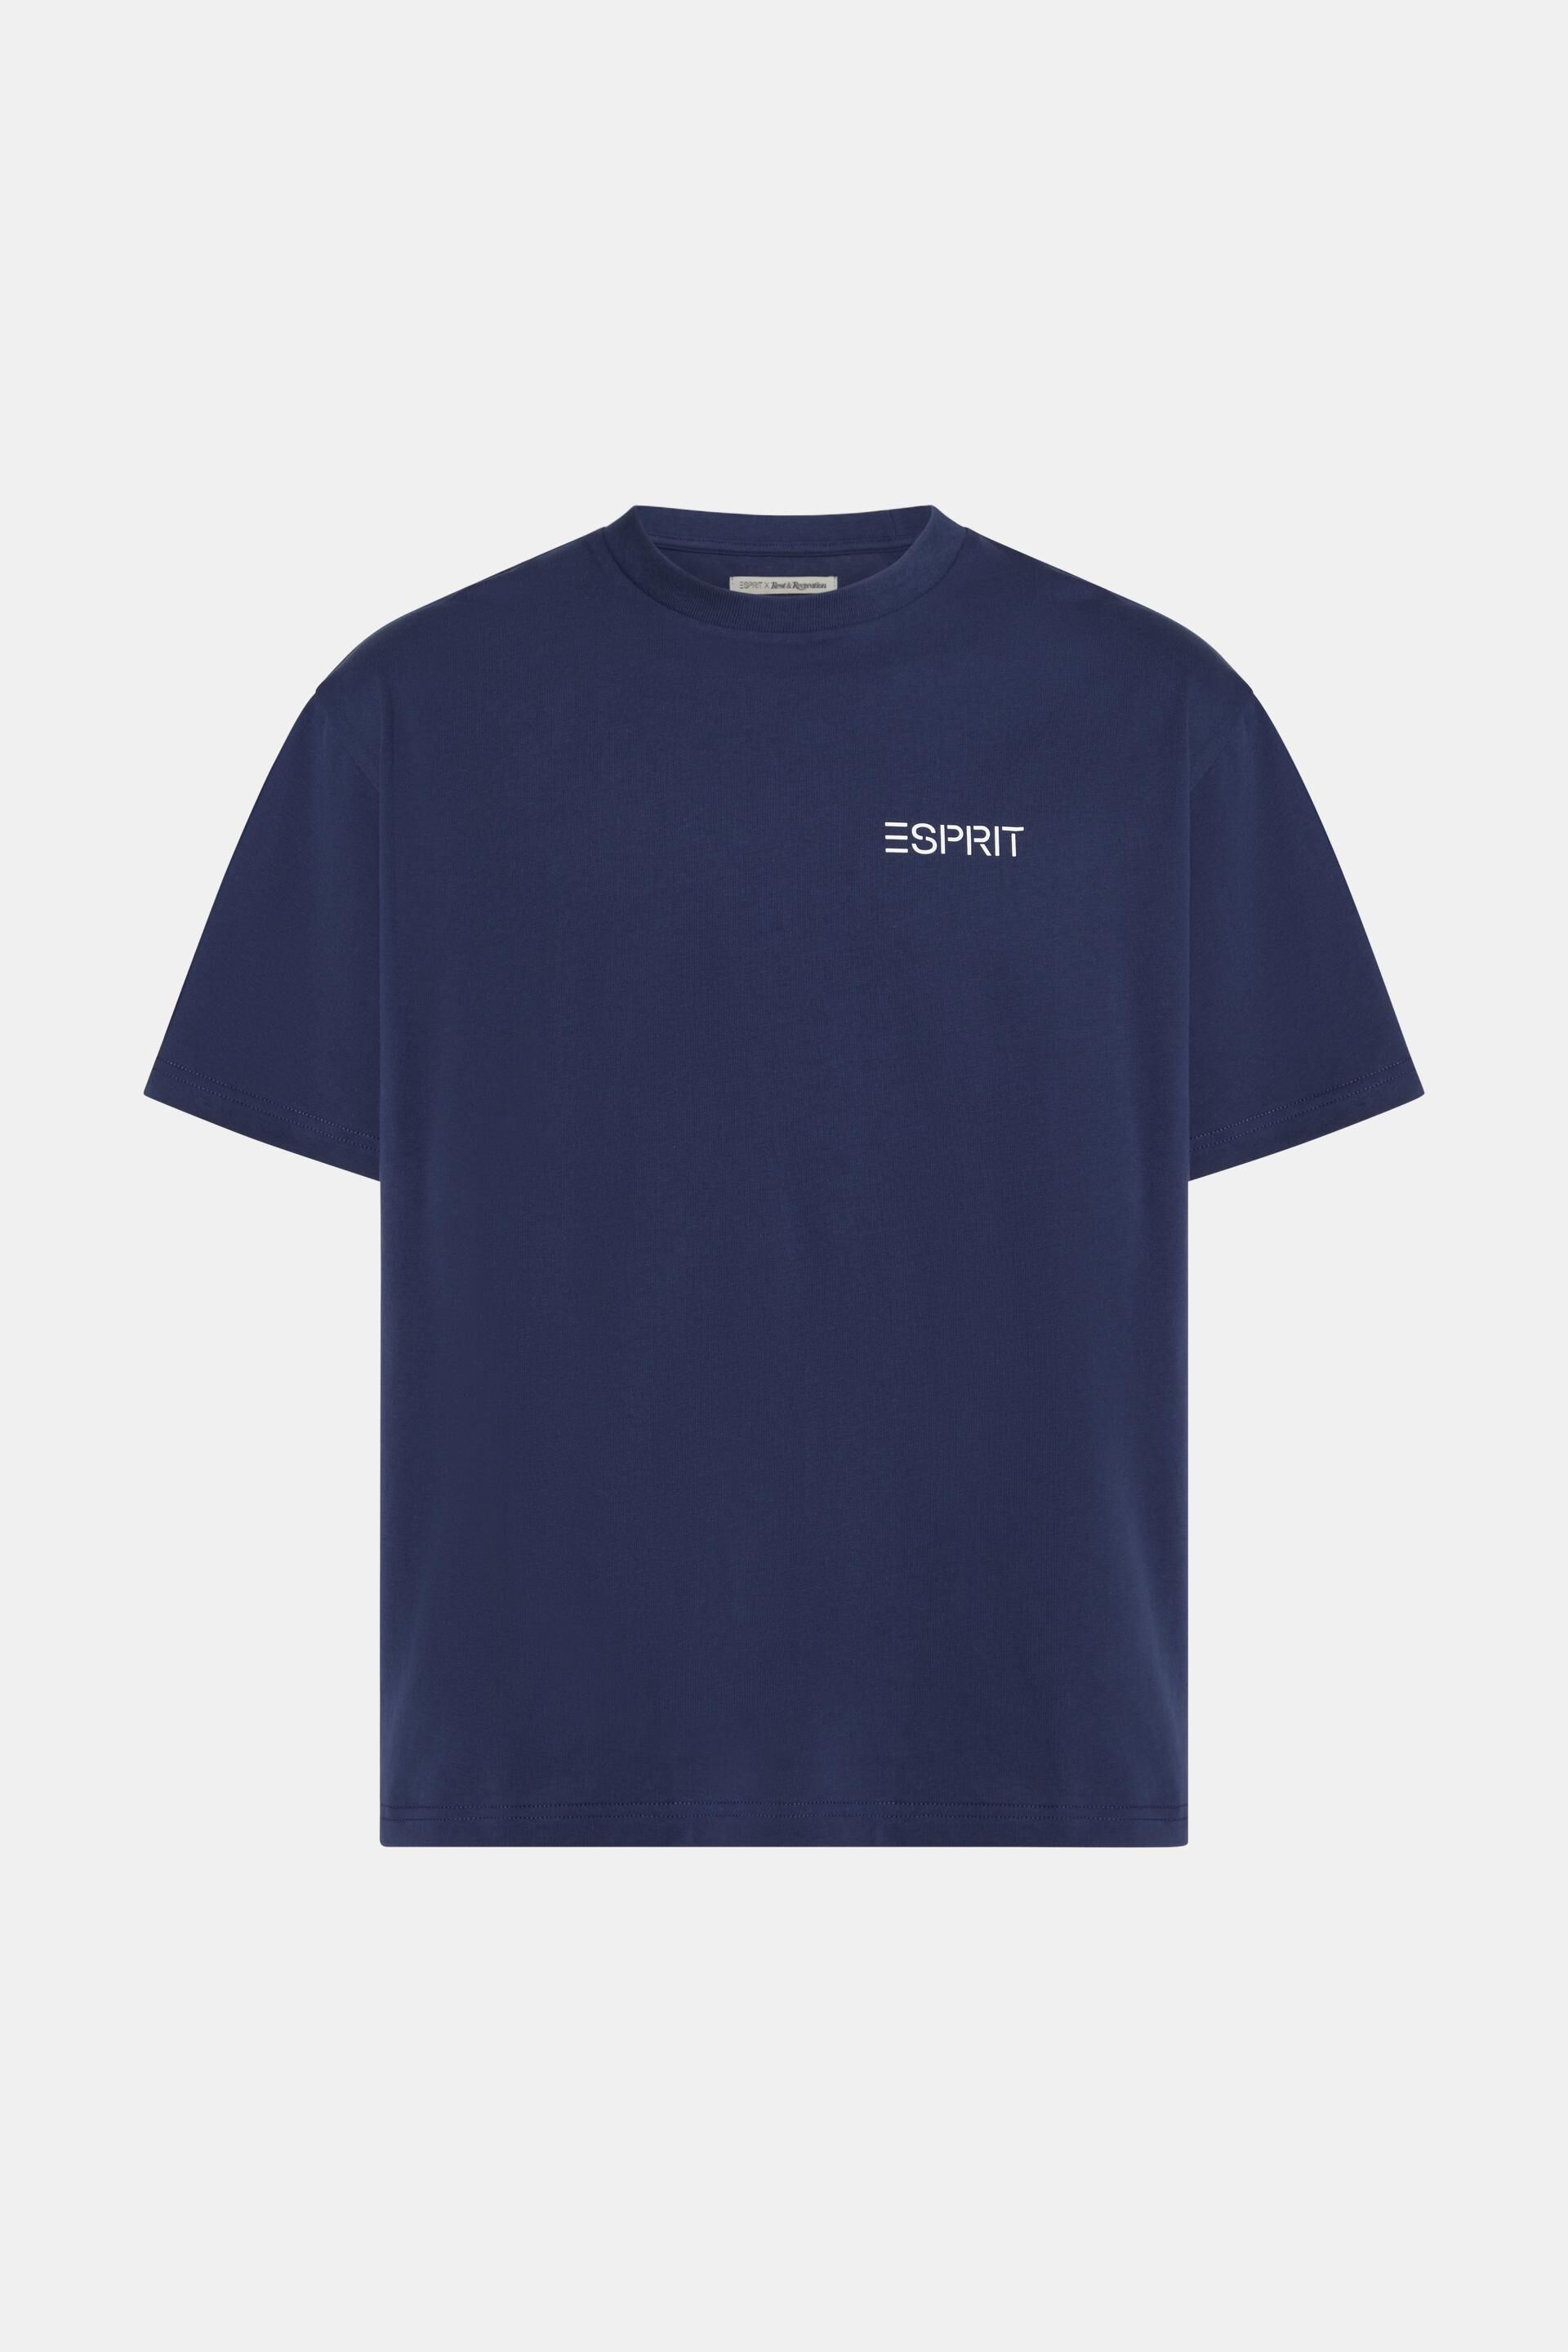 Esprit T-Shirt mit Edition-Aufdruck Seoul